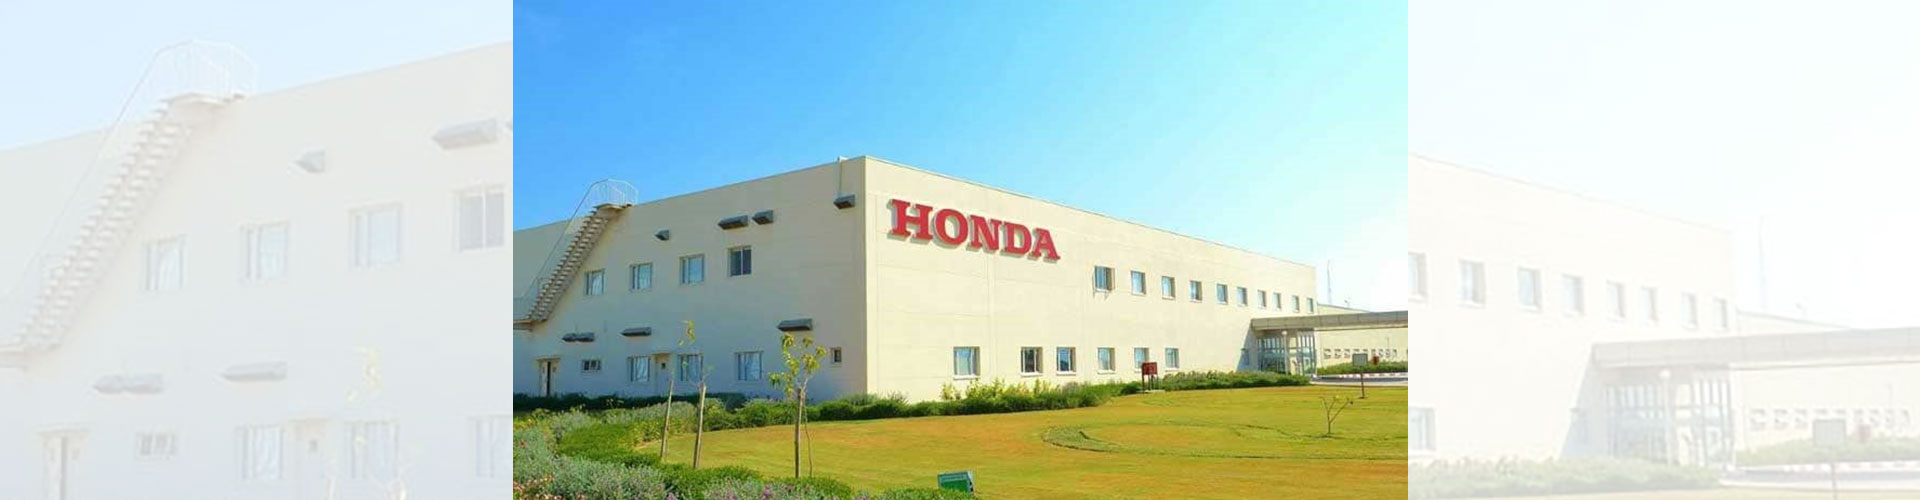 honda factory ahmedabad